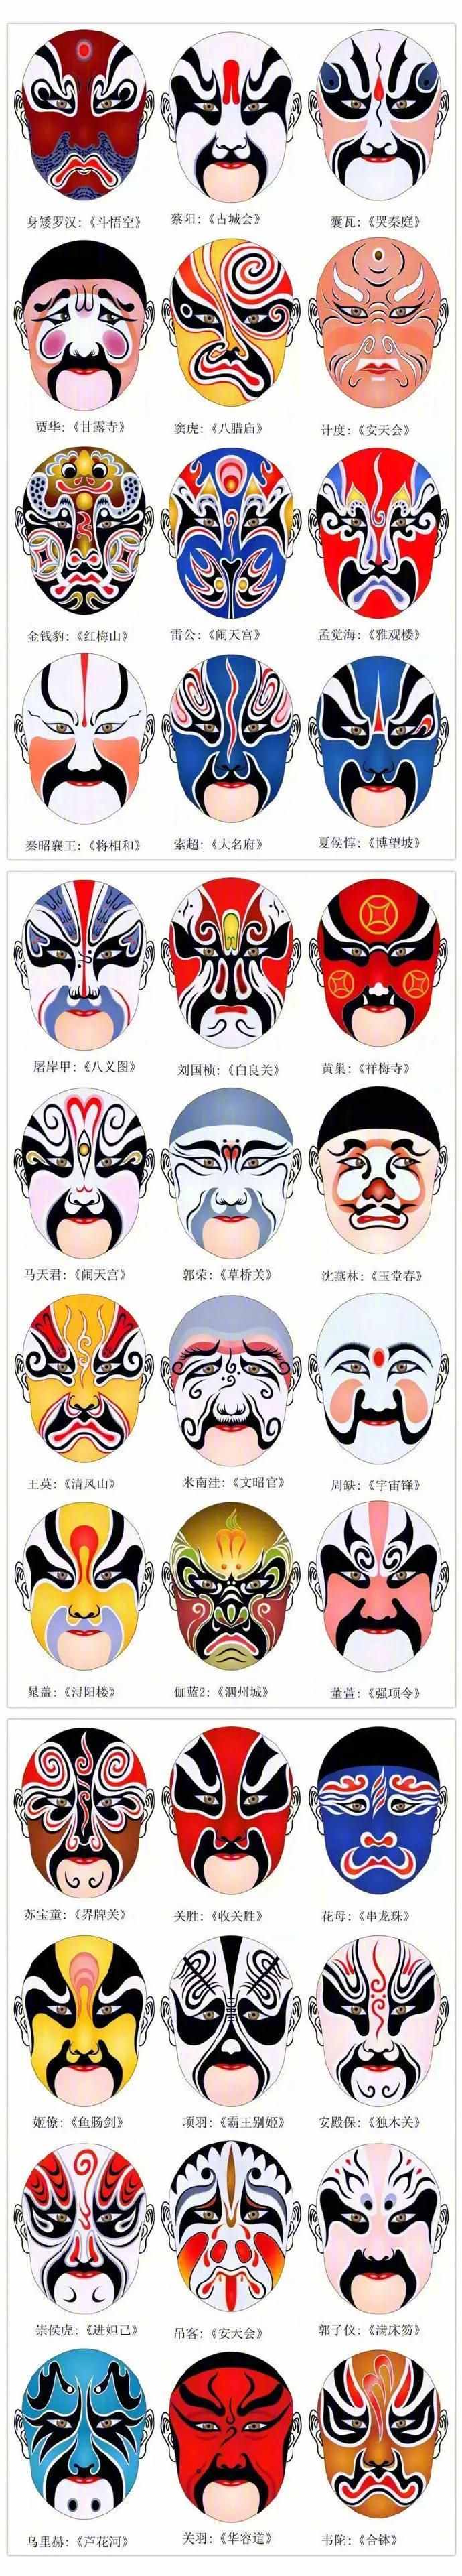 中国京剧脸谱来了，经典传承，赶紧收藏